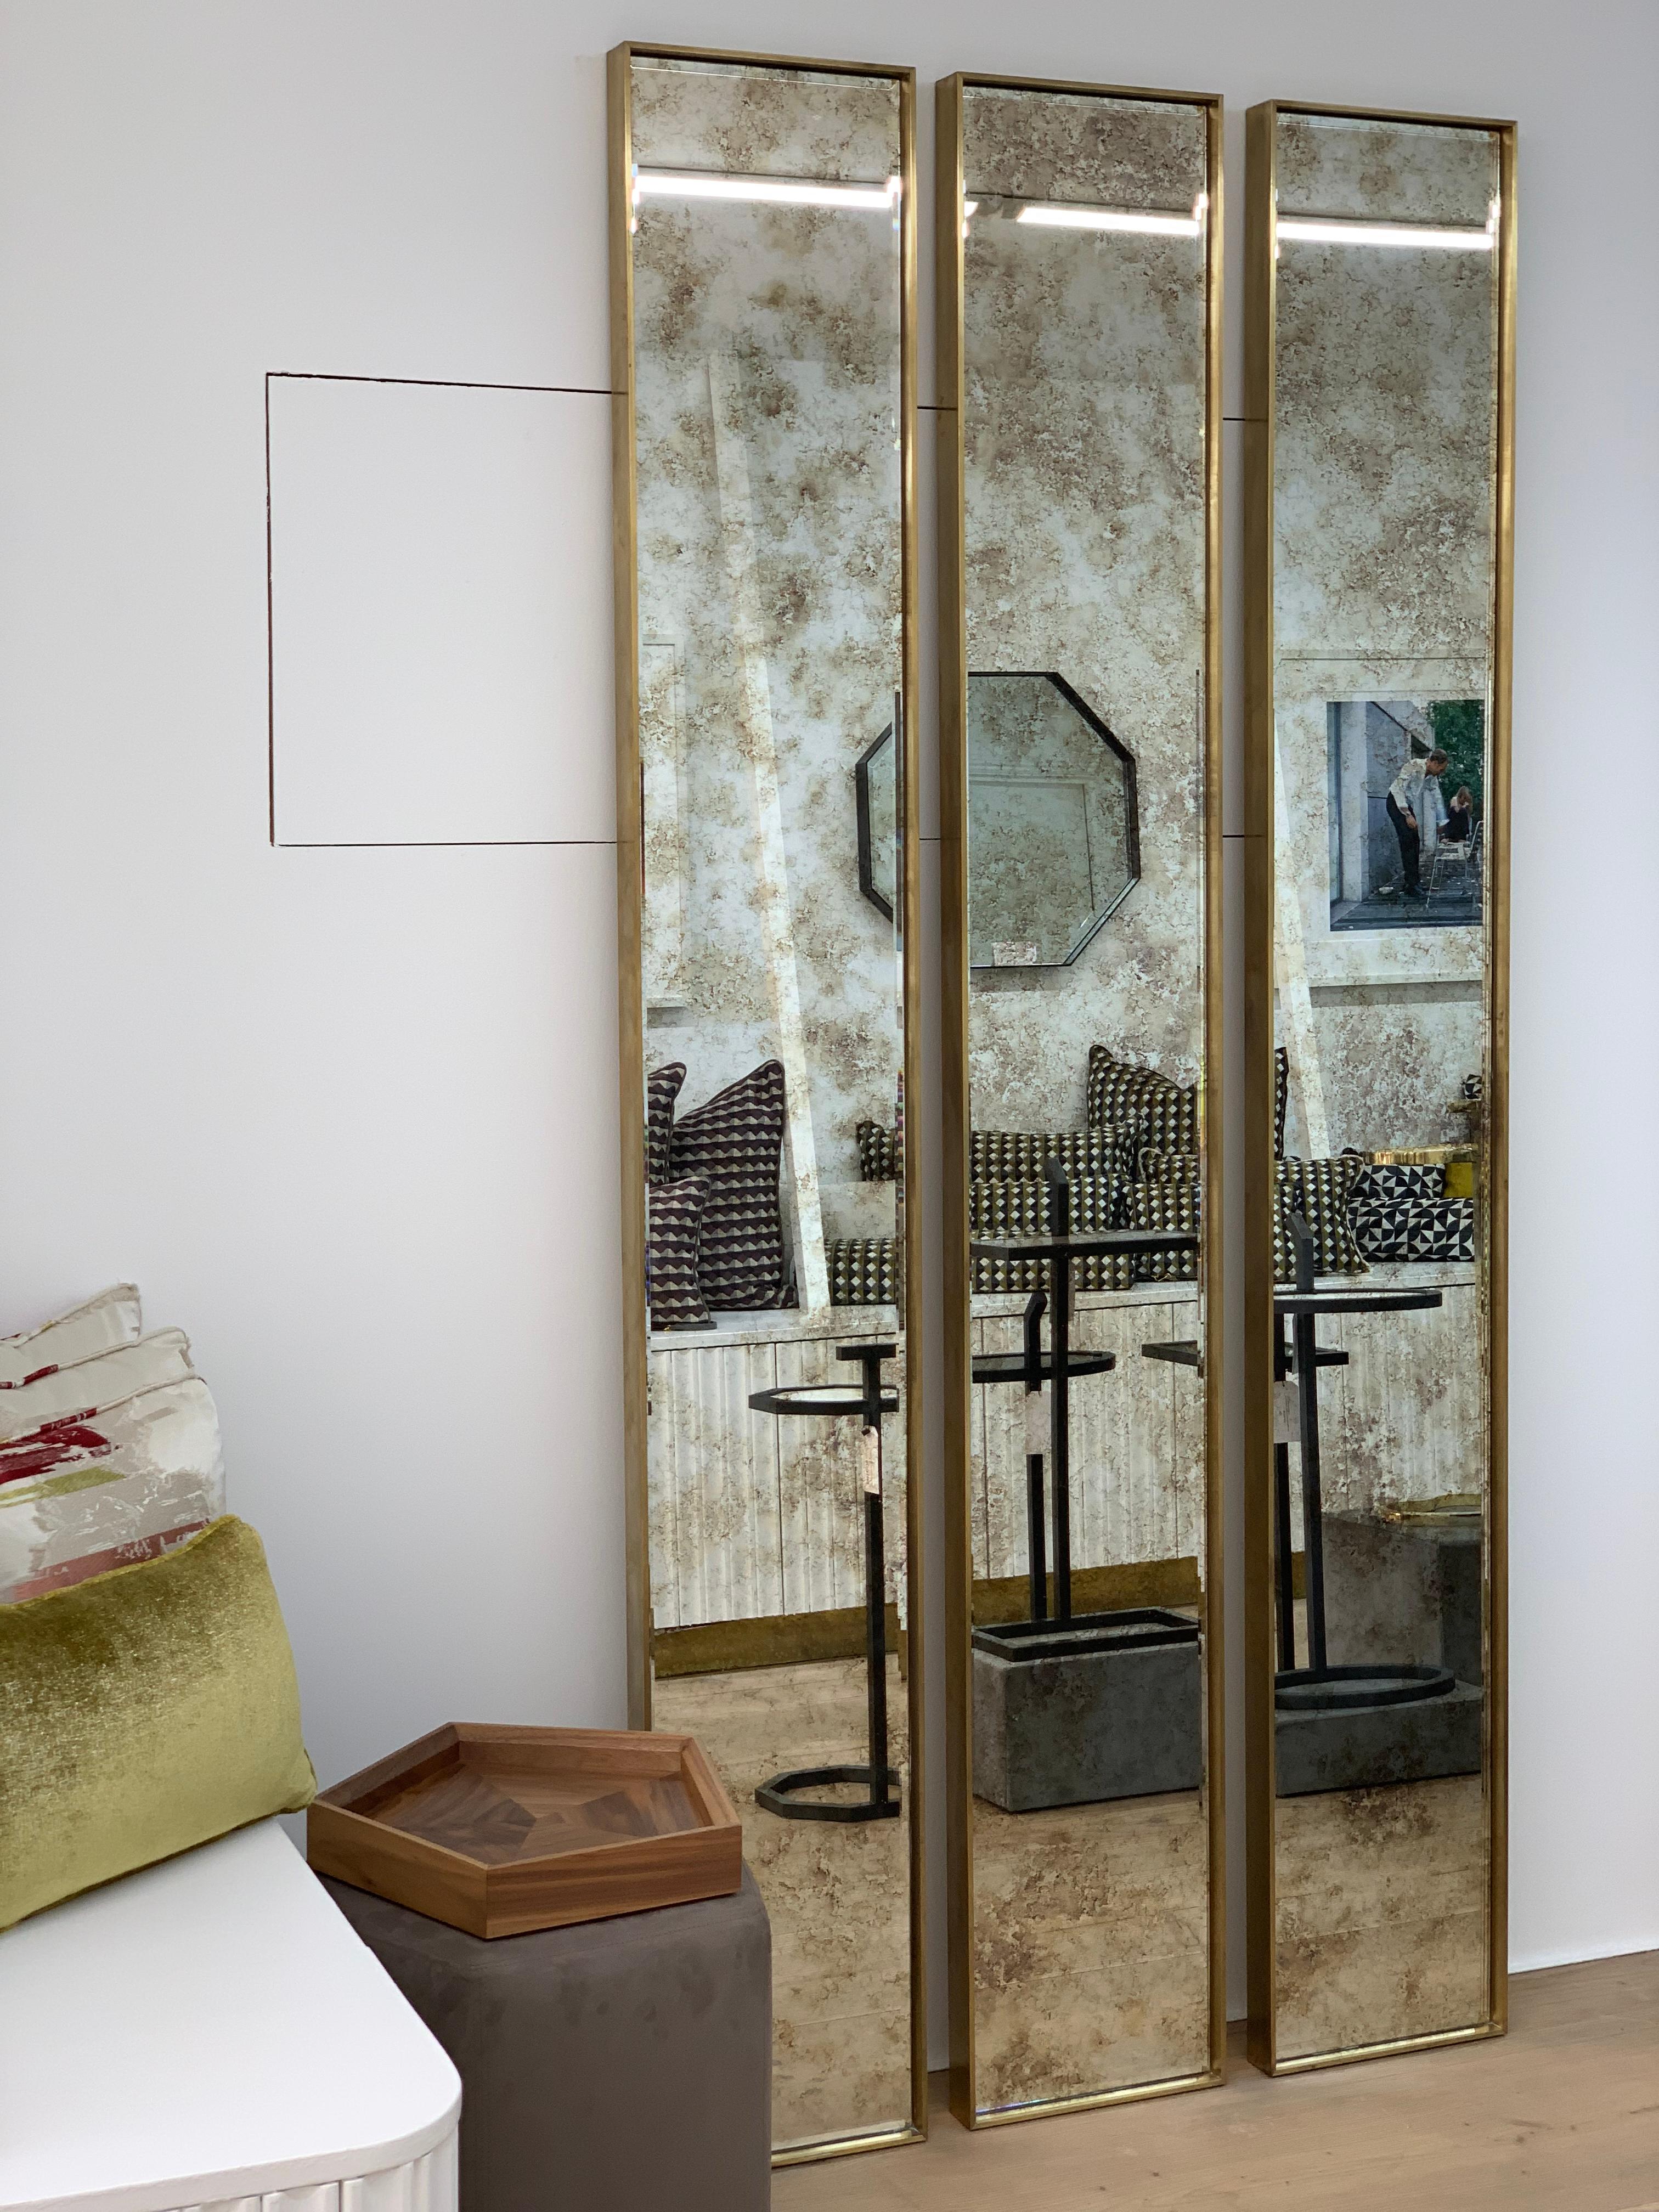 Wir stellen den Slim Mirror von Casa Botelho vor - ein luxuriöses und maskulines Wohnaccessoire, das ein kühnes Statement setzen soll. Mit einer Höhe von 210 cm und einem übertriebenen Rahmen verleiht dieser Spiegel jedem Raum einen Hauch von